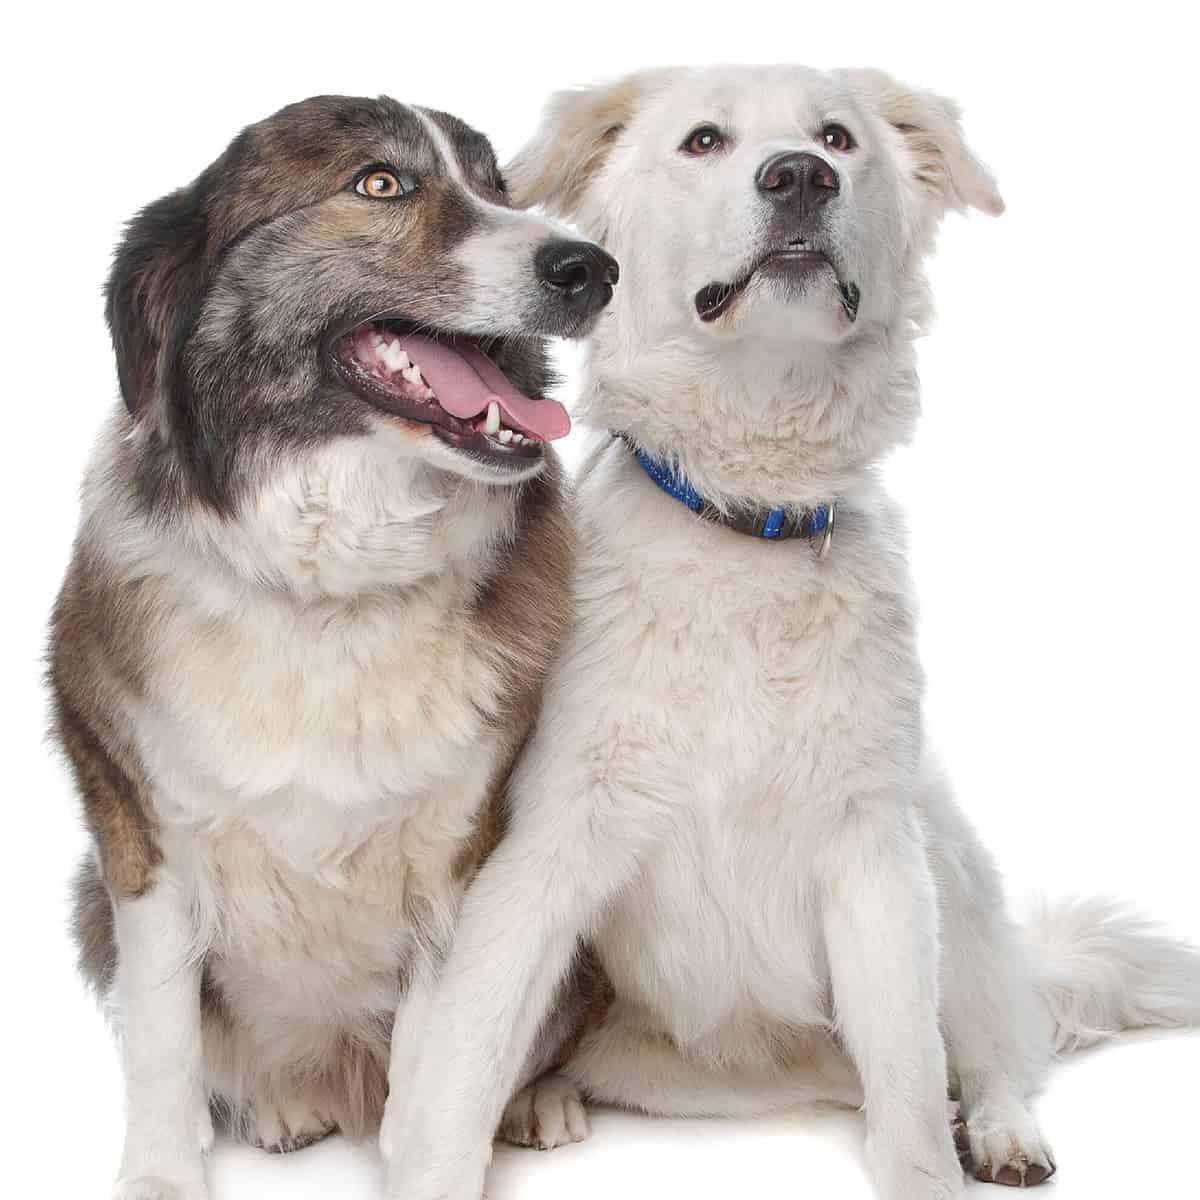 Two regal Aidis, the Atlas Mountain Dogs